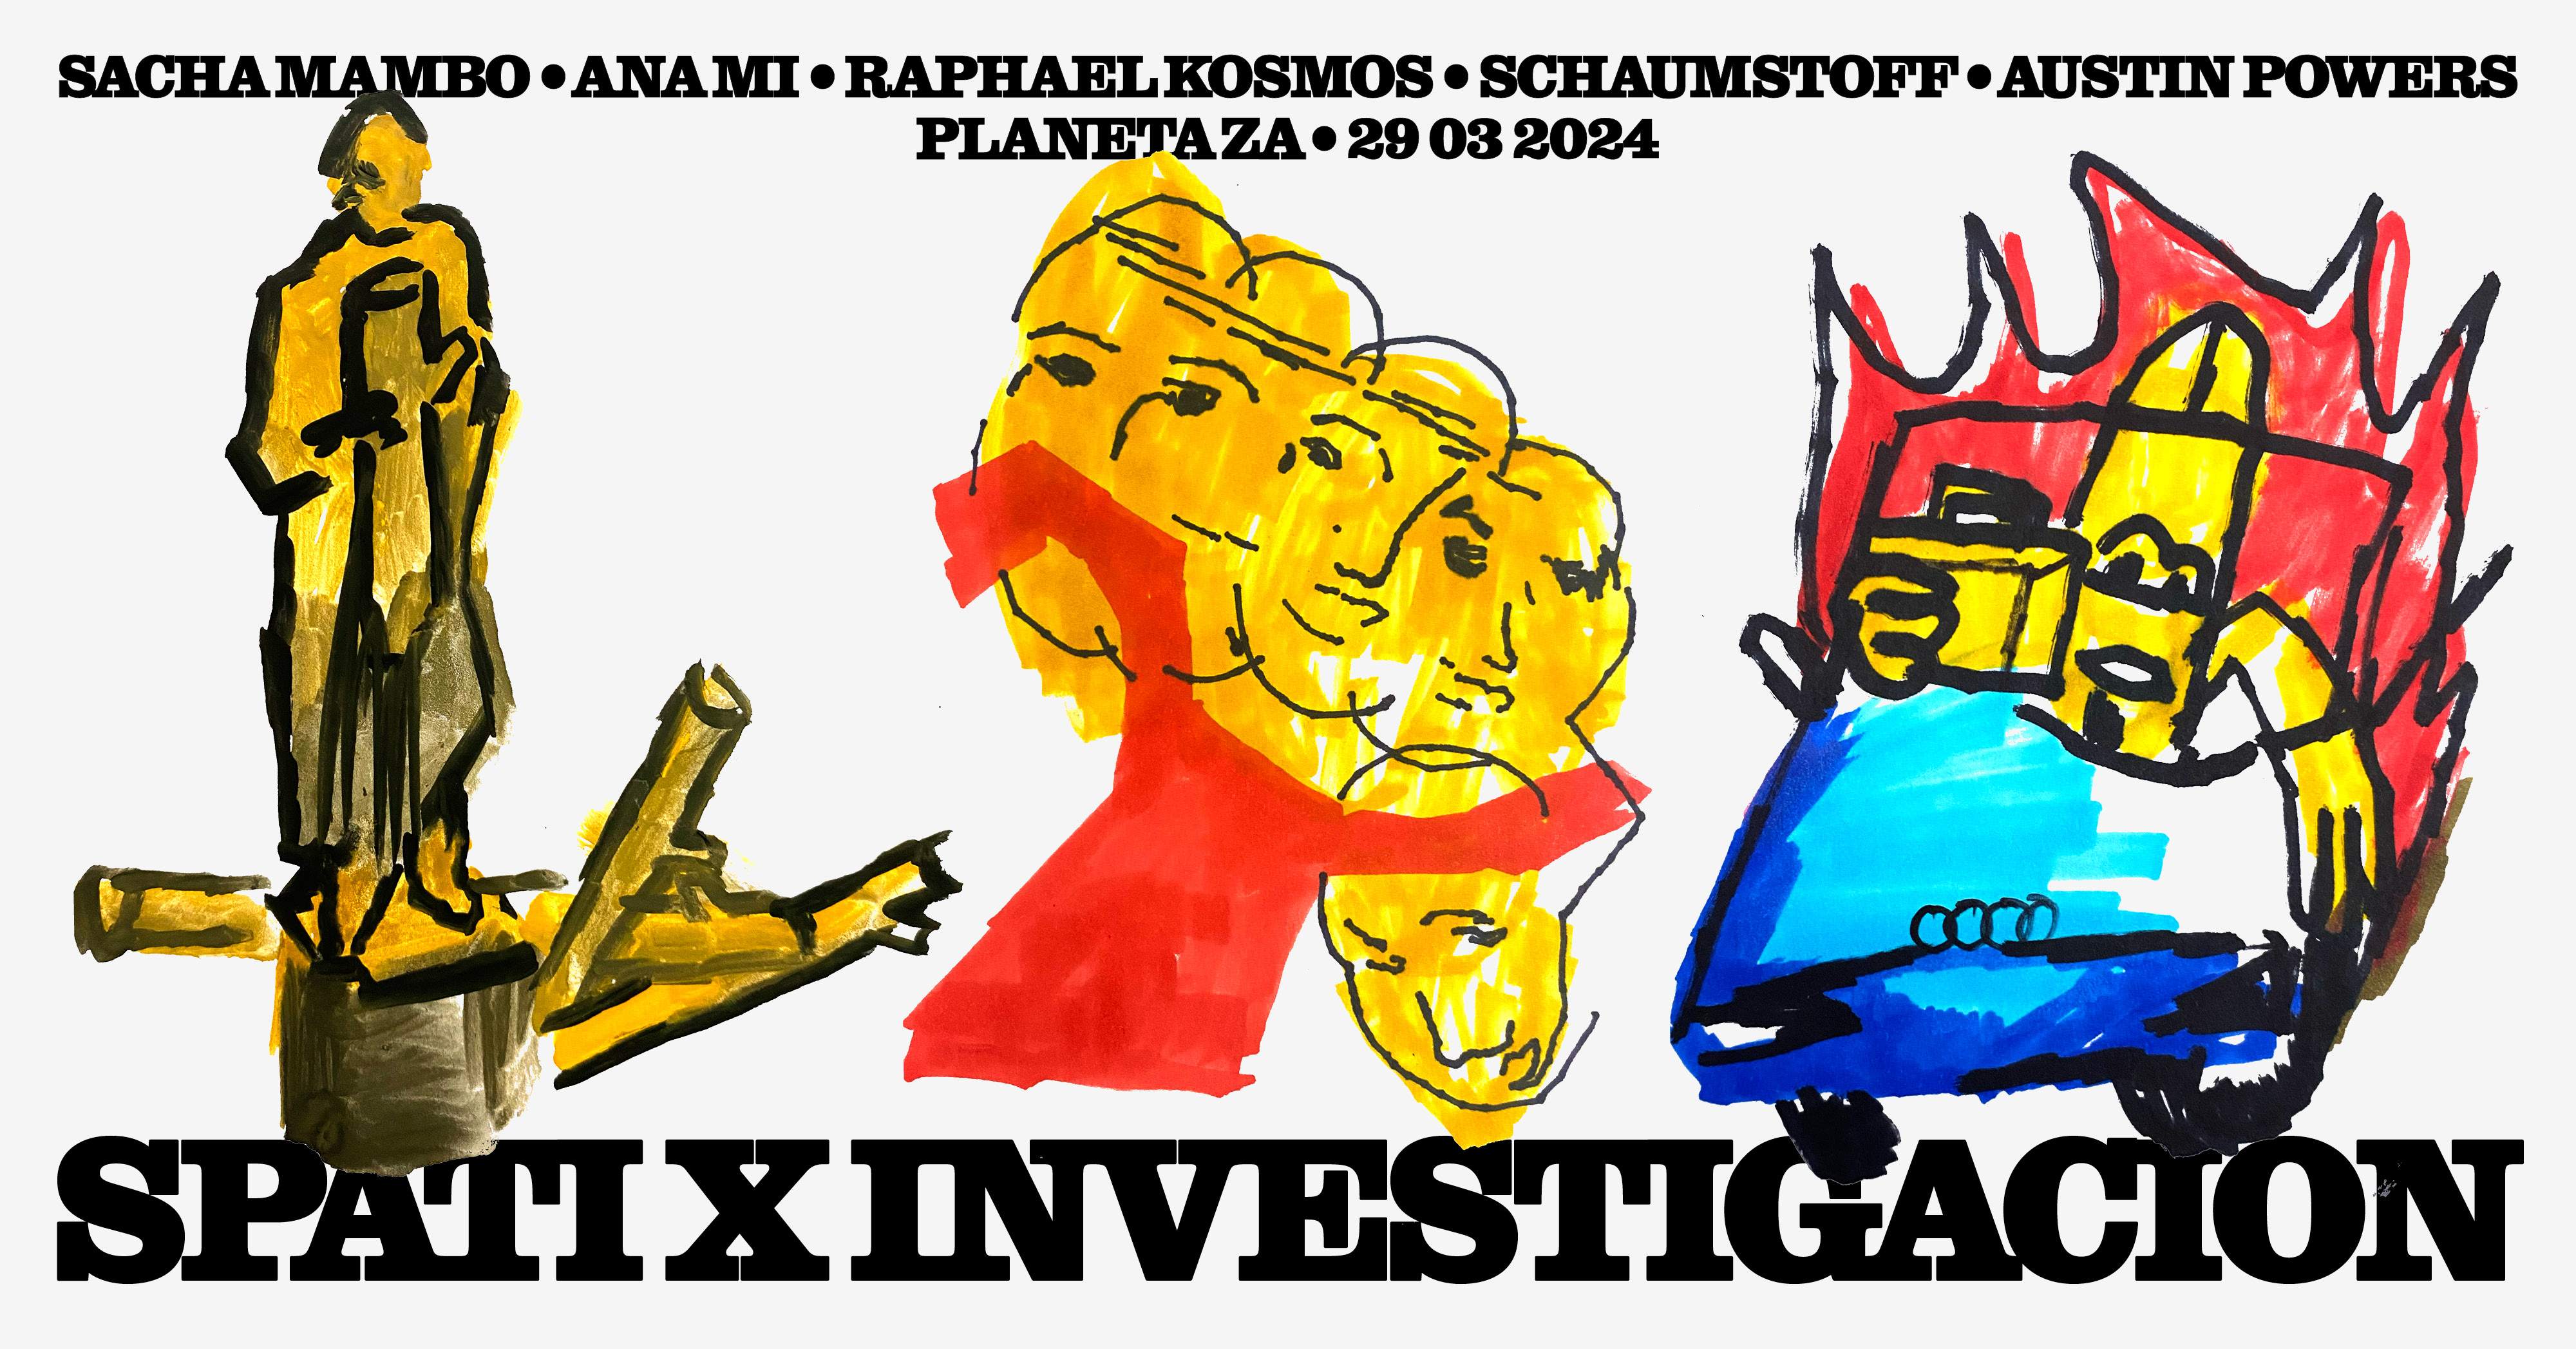 Späti x Investigacion with Sacha Mambo (Macadam Mambo) - フライヤー裏